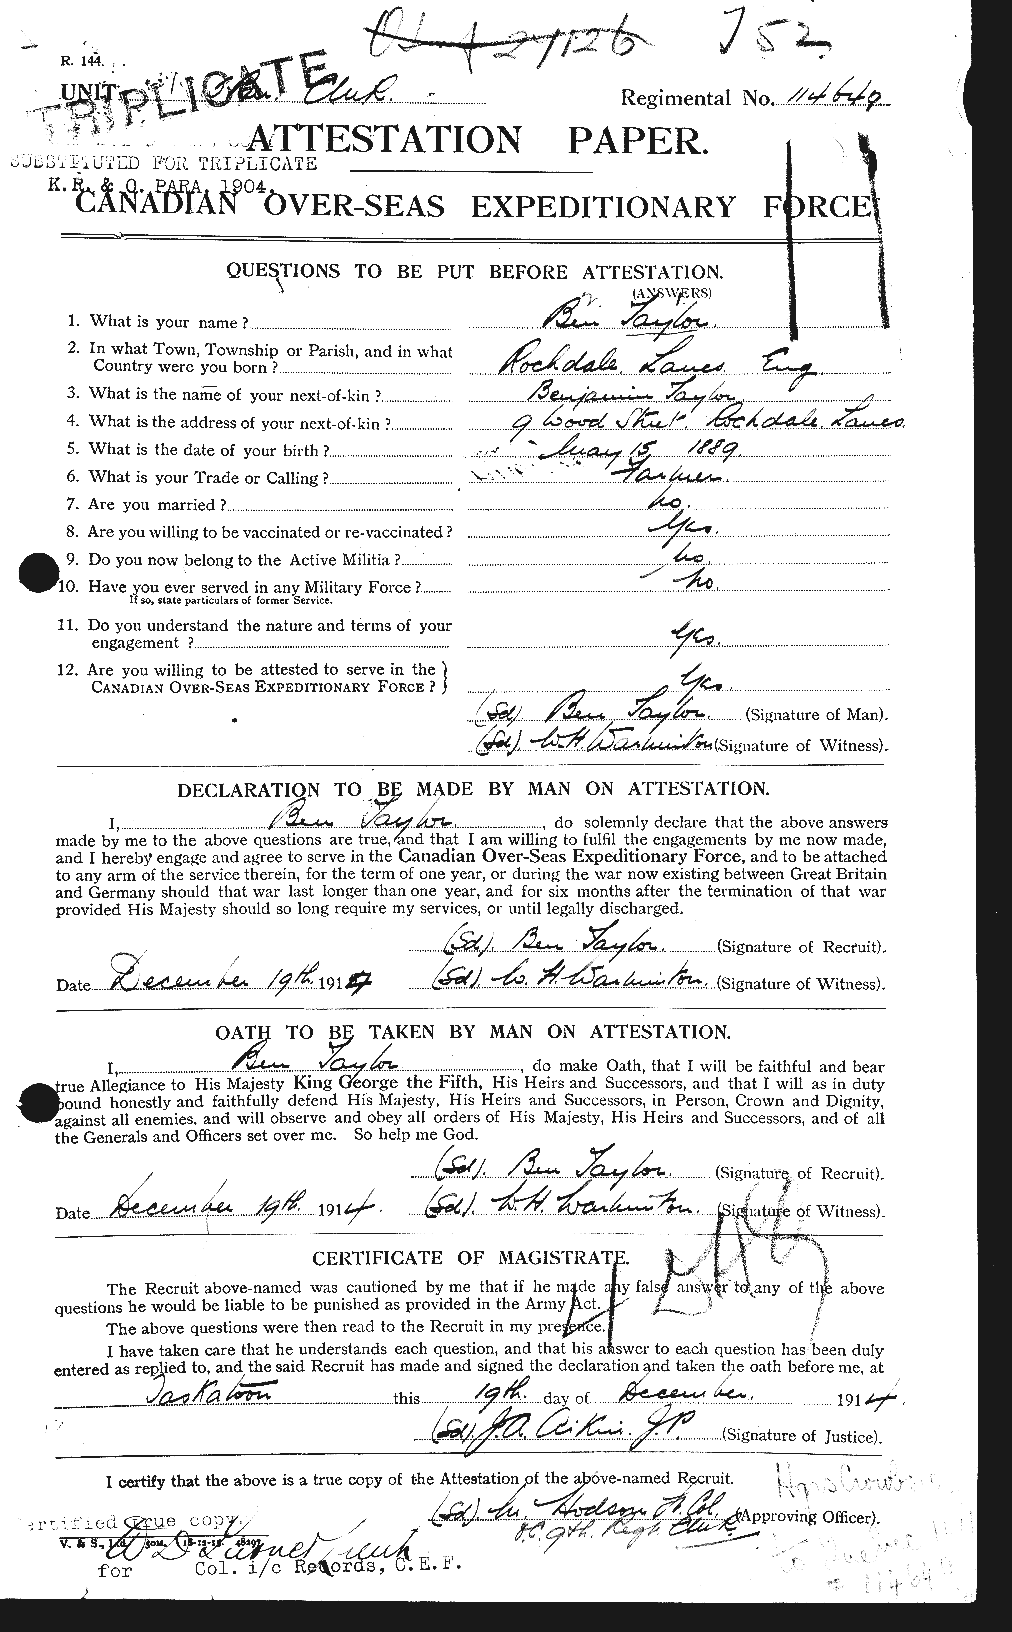 Dossiers du Personnel de la Première Guerre mondiale - CEC 626758a